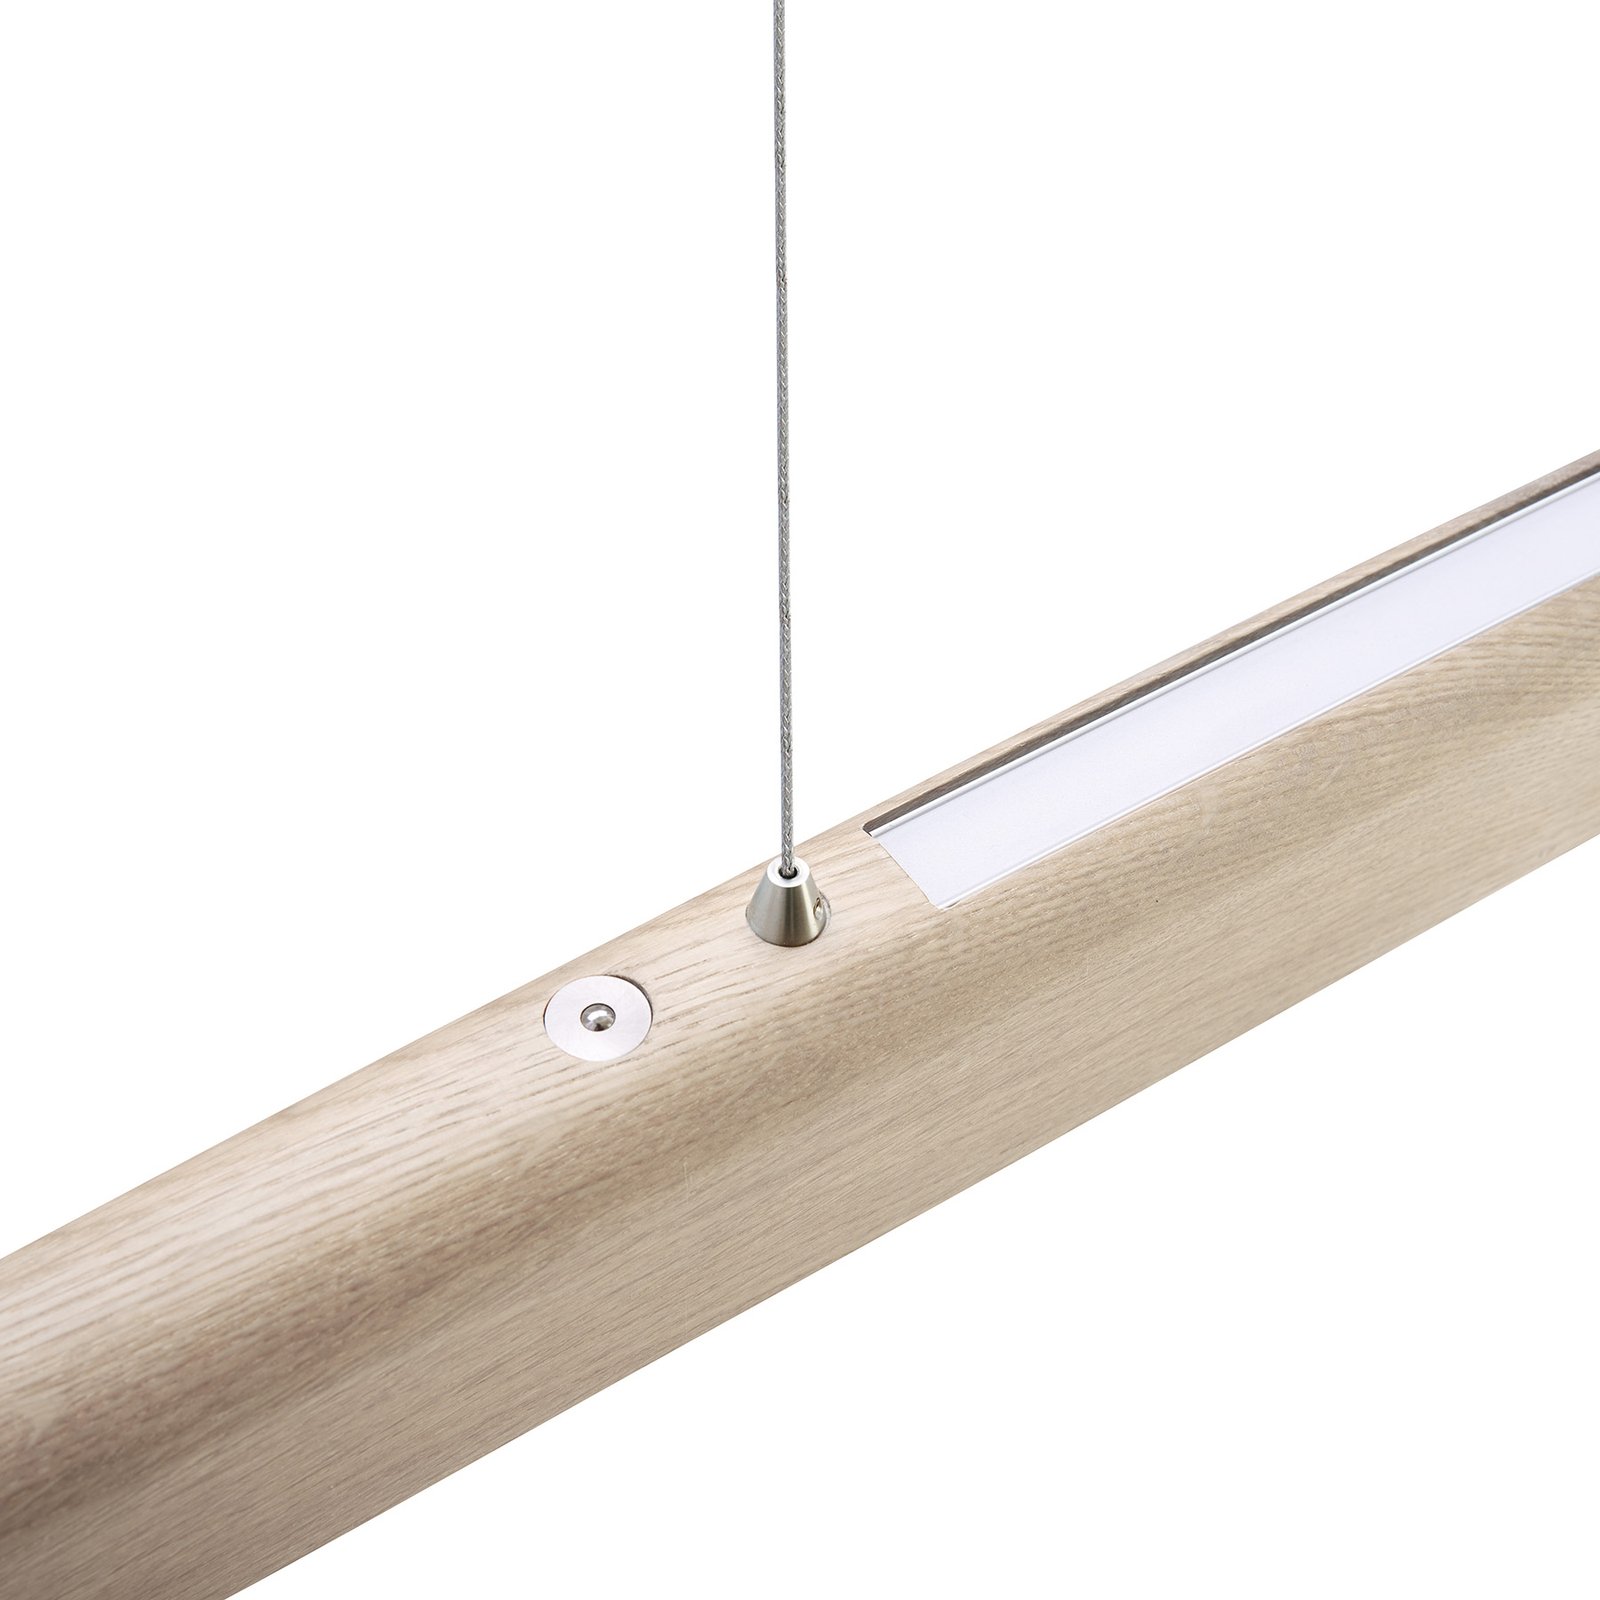 HerzBlut Arco LED-Hängelampe asteiche weiß 130cm